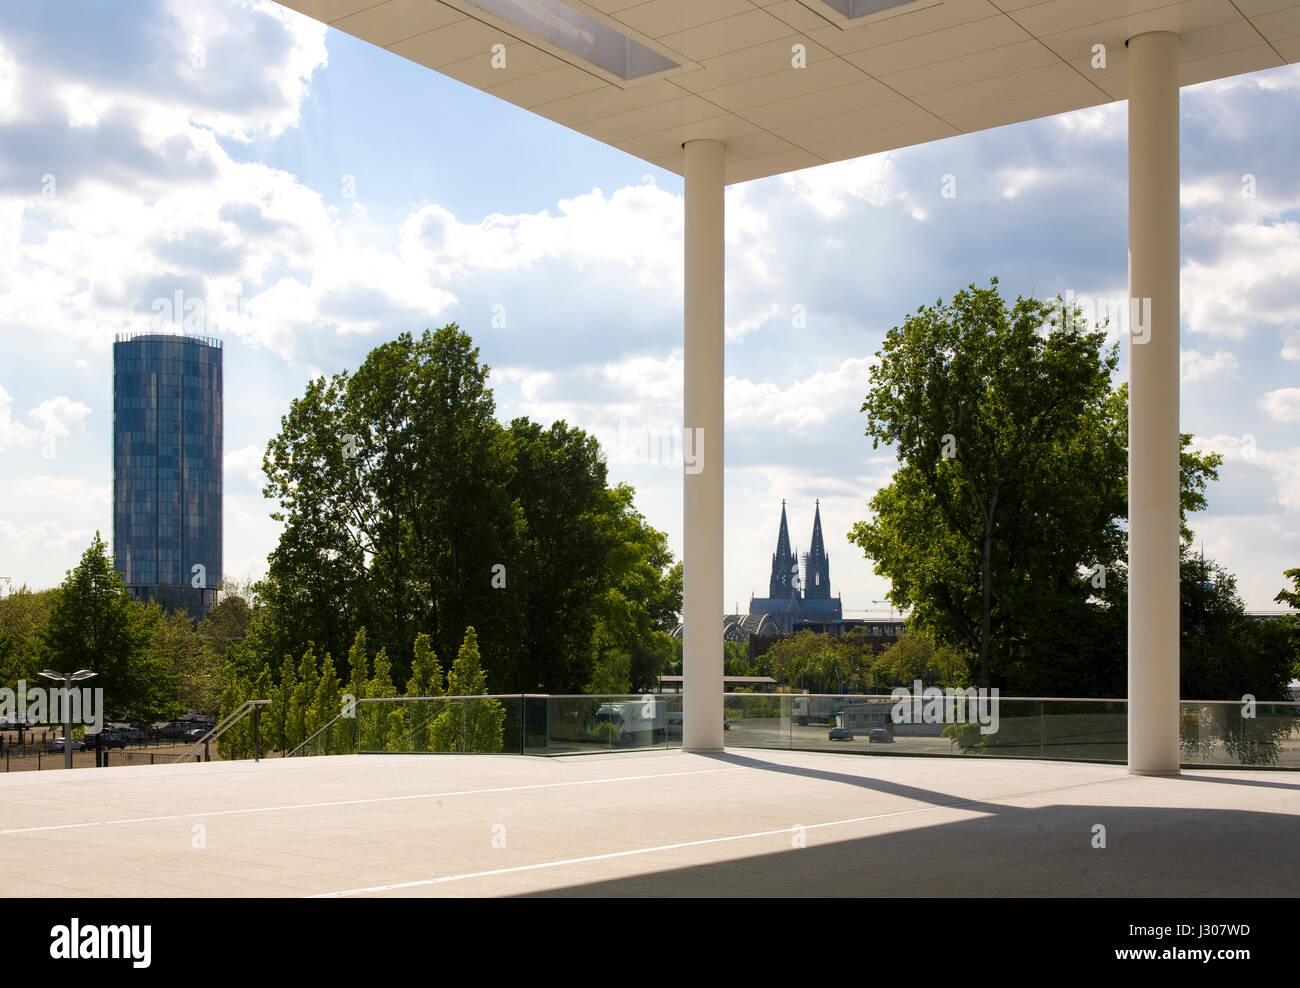 Germania, Colonia, vista dall'entrata sud di spazi espositivi in città distretto Deutz al KoelnTriangle Tower e la cattedrale Foto Stock